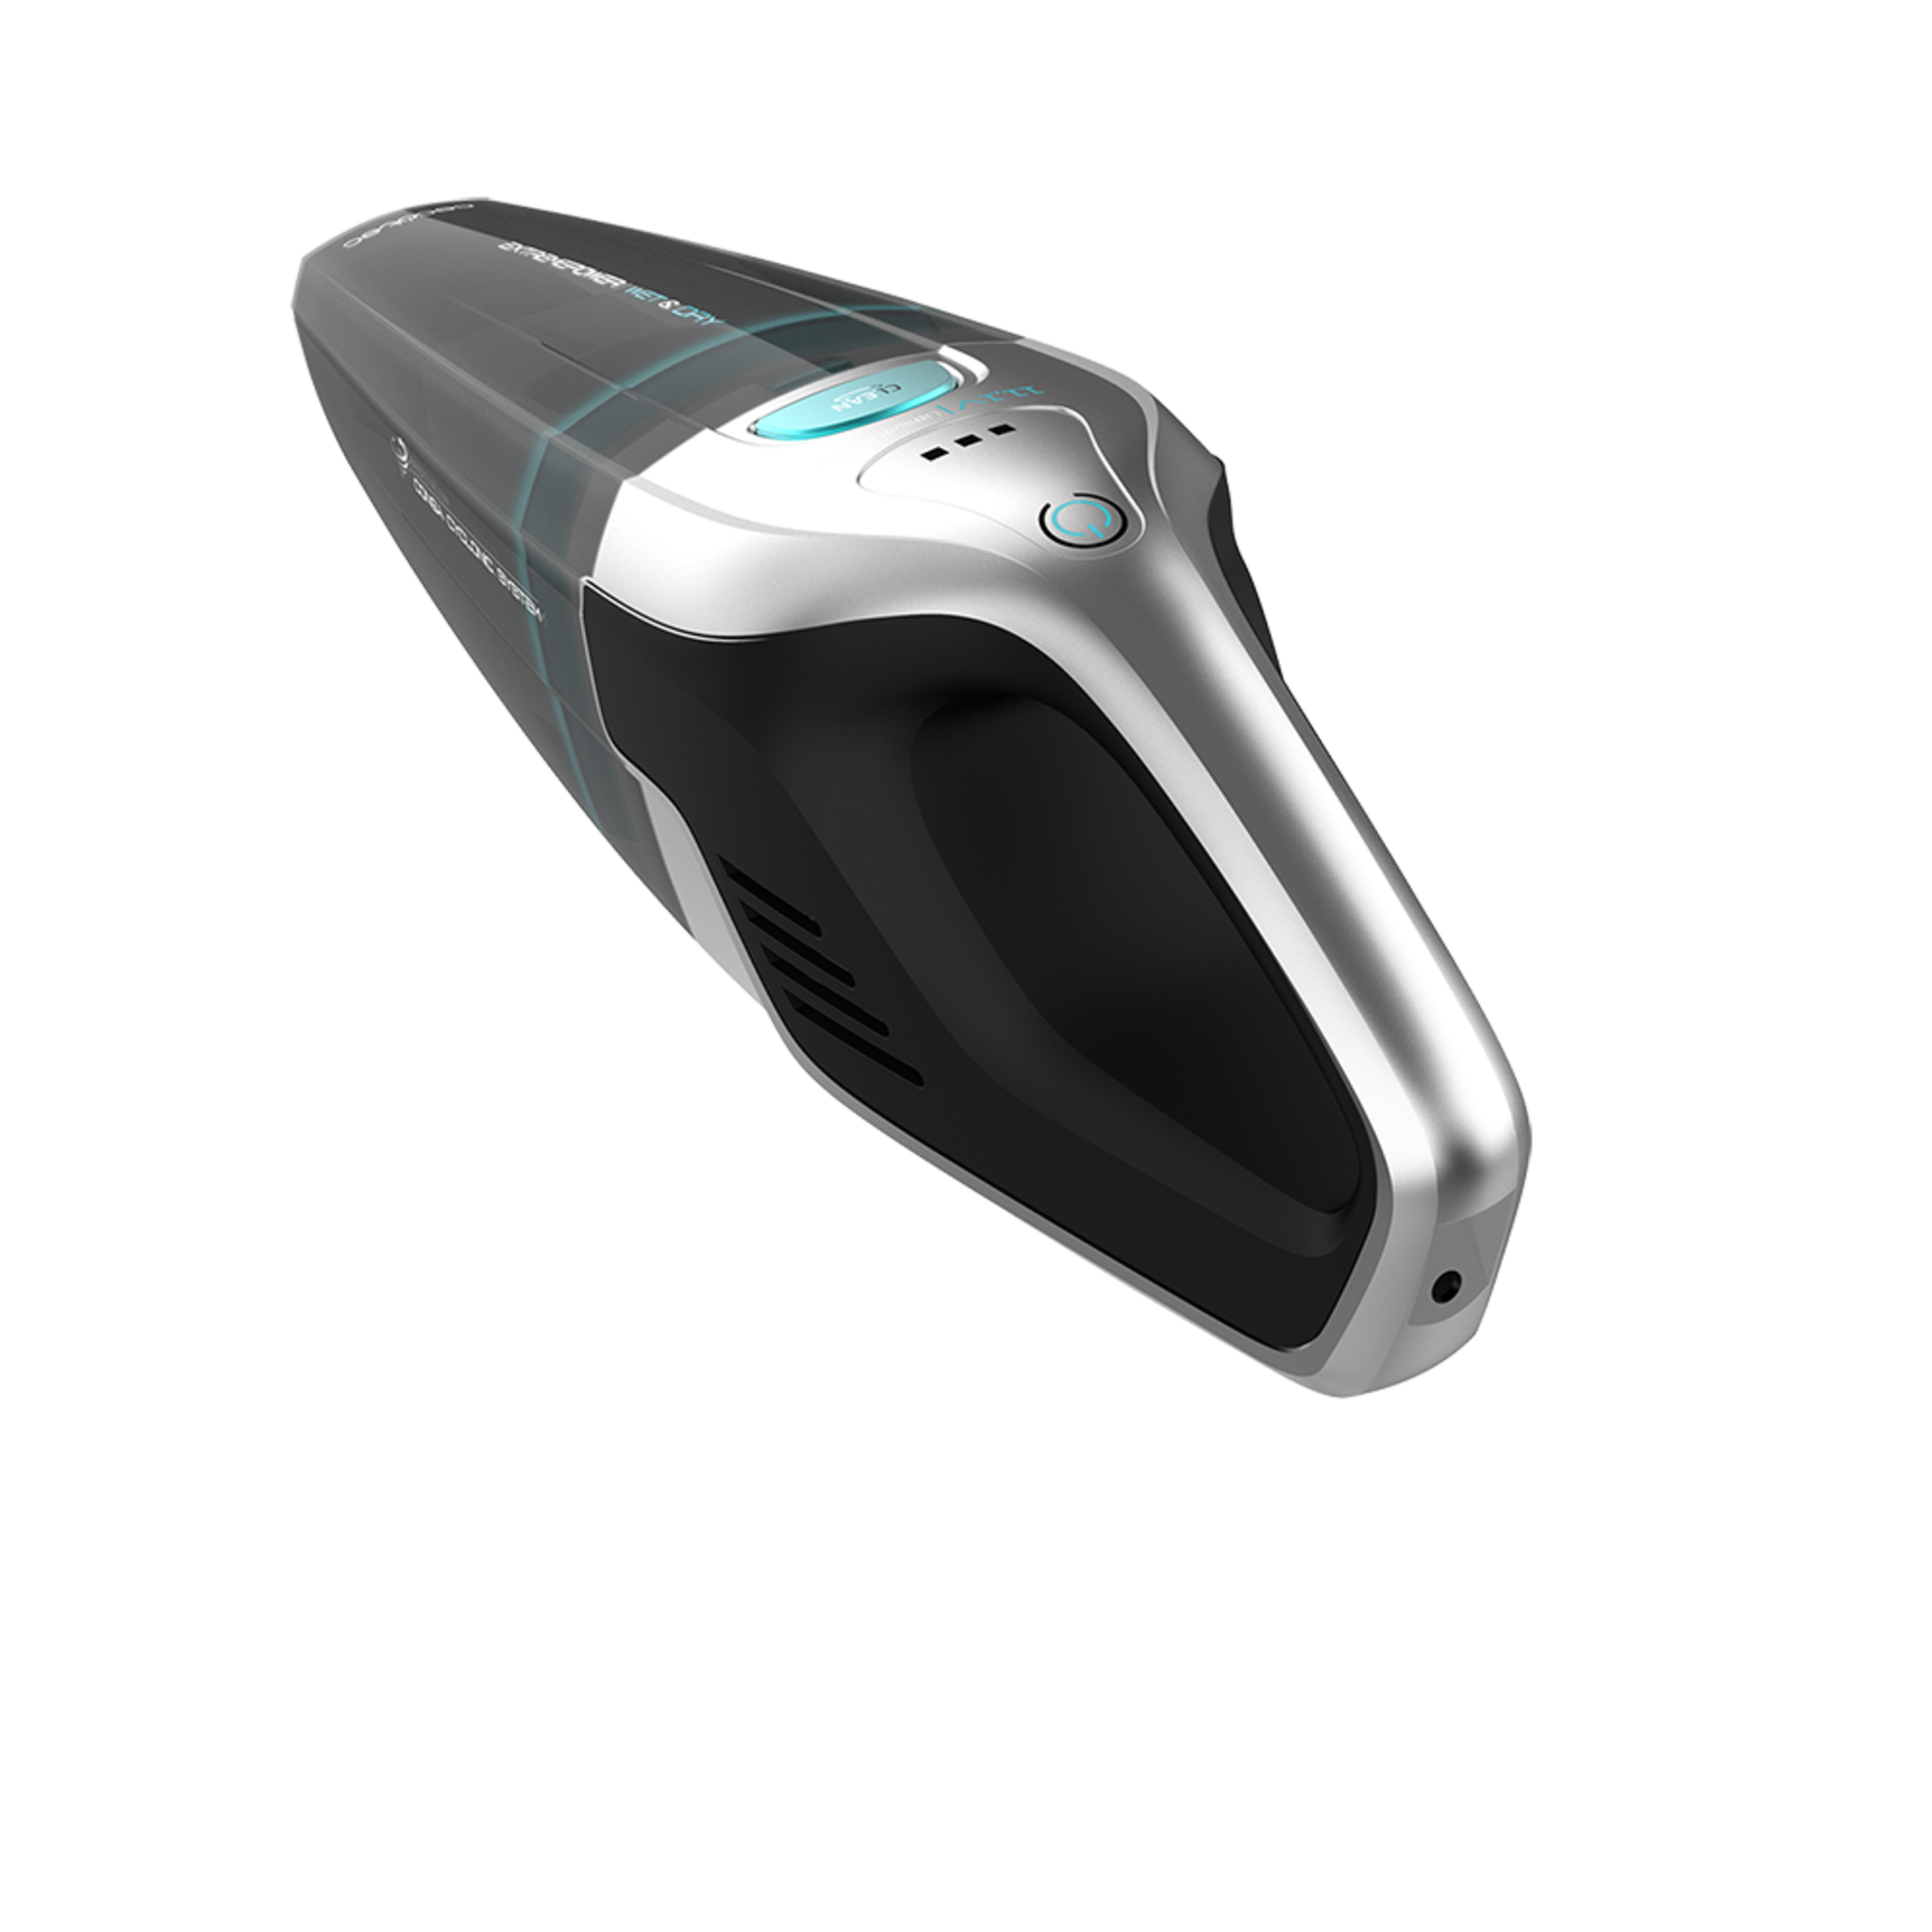 Aspirateur à main Conga Immortal ExtremeSuction 11,1 V Hand. Il aspire les solides et les liquides, léger et sans sac, autonomie jusqu'à 20 minutes, 11,1 V, technologie cyclonique